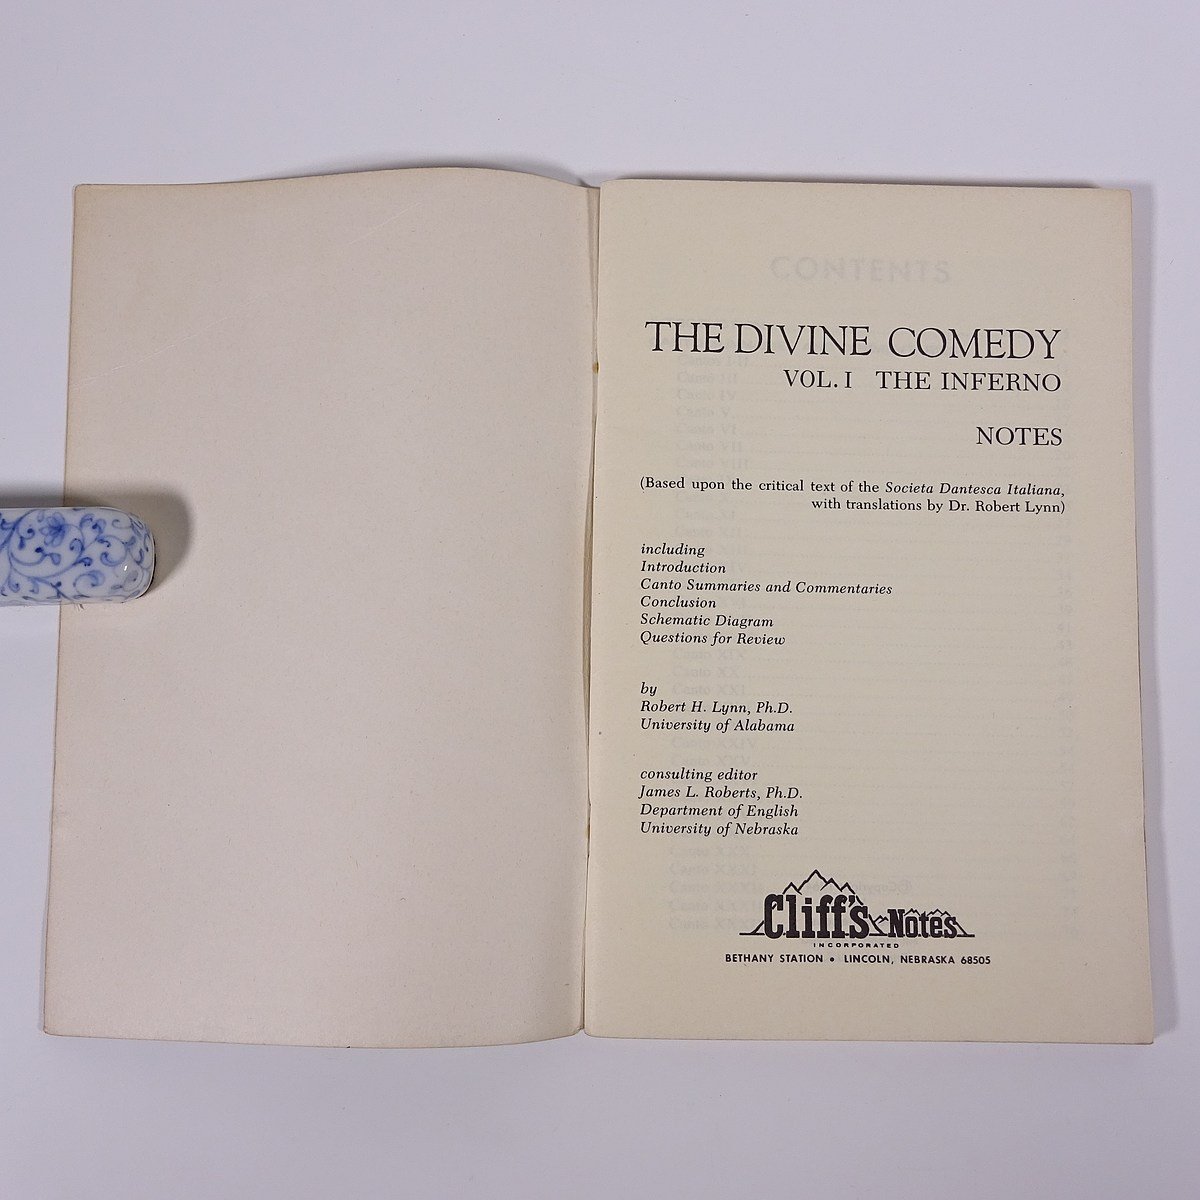 【英語洋書】 THE DIVINE COMEDY INFERNO 神曲 地獄篇 解説書 ダンテ Cliff’s Notes 1969 小冊子 文学研究 文芸_画像5